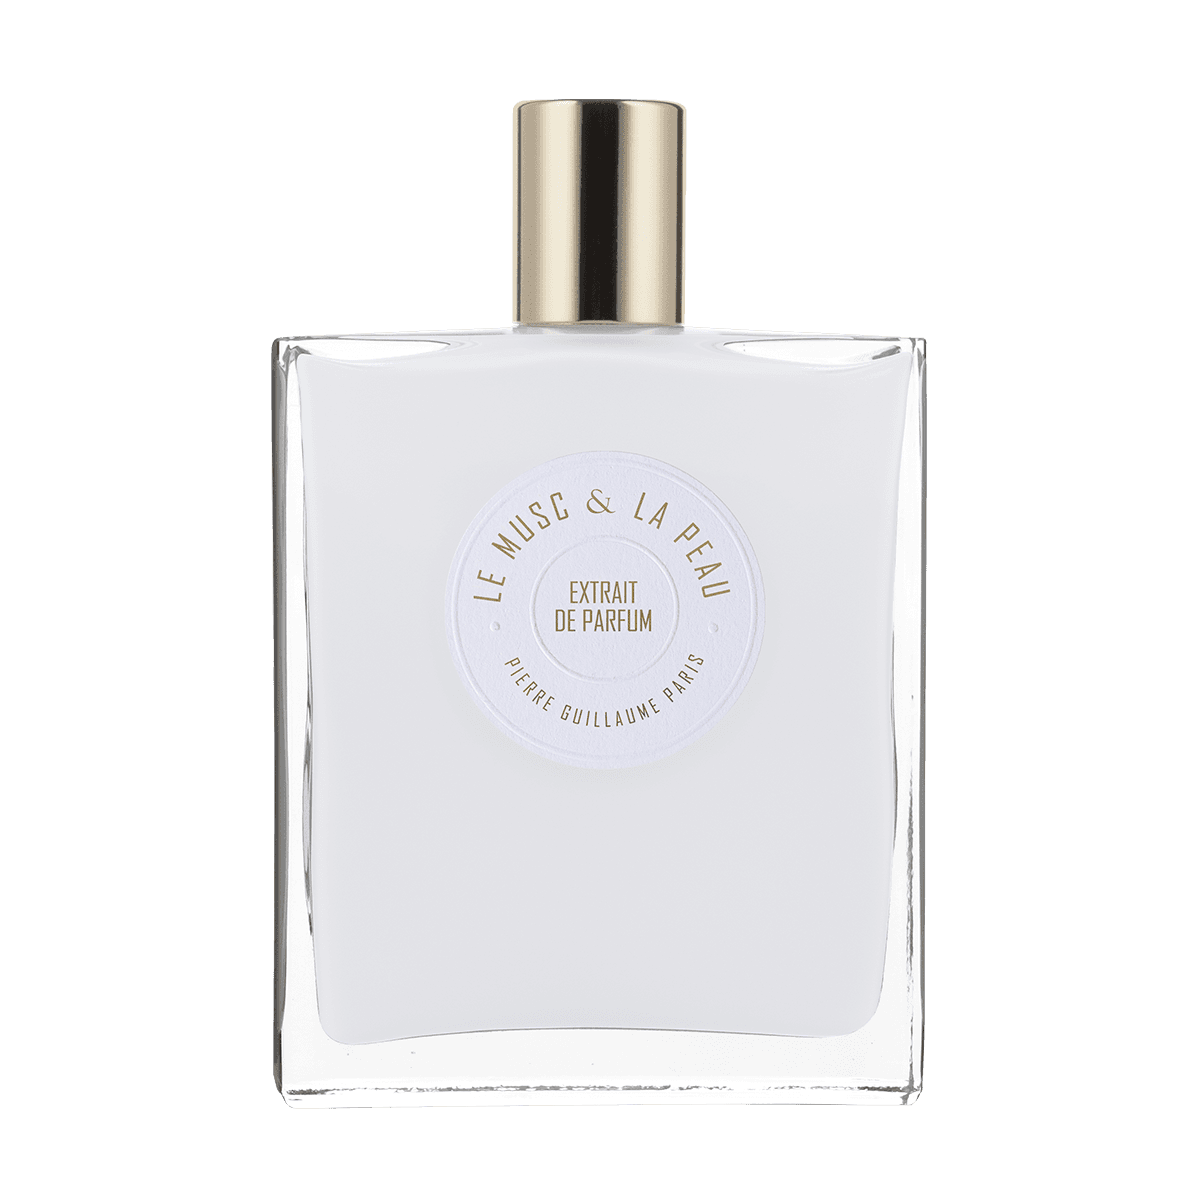 Pierre Guillaume Paris - Le Musc & La Peau Extrait de Parfum 100 ml